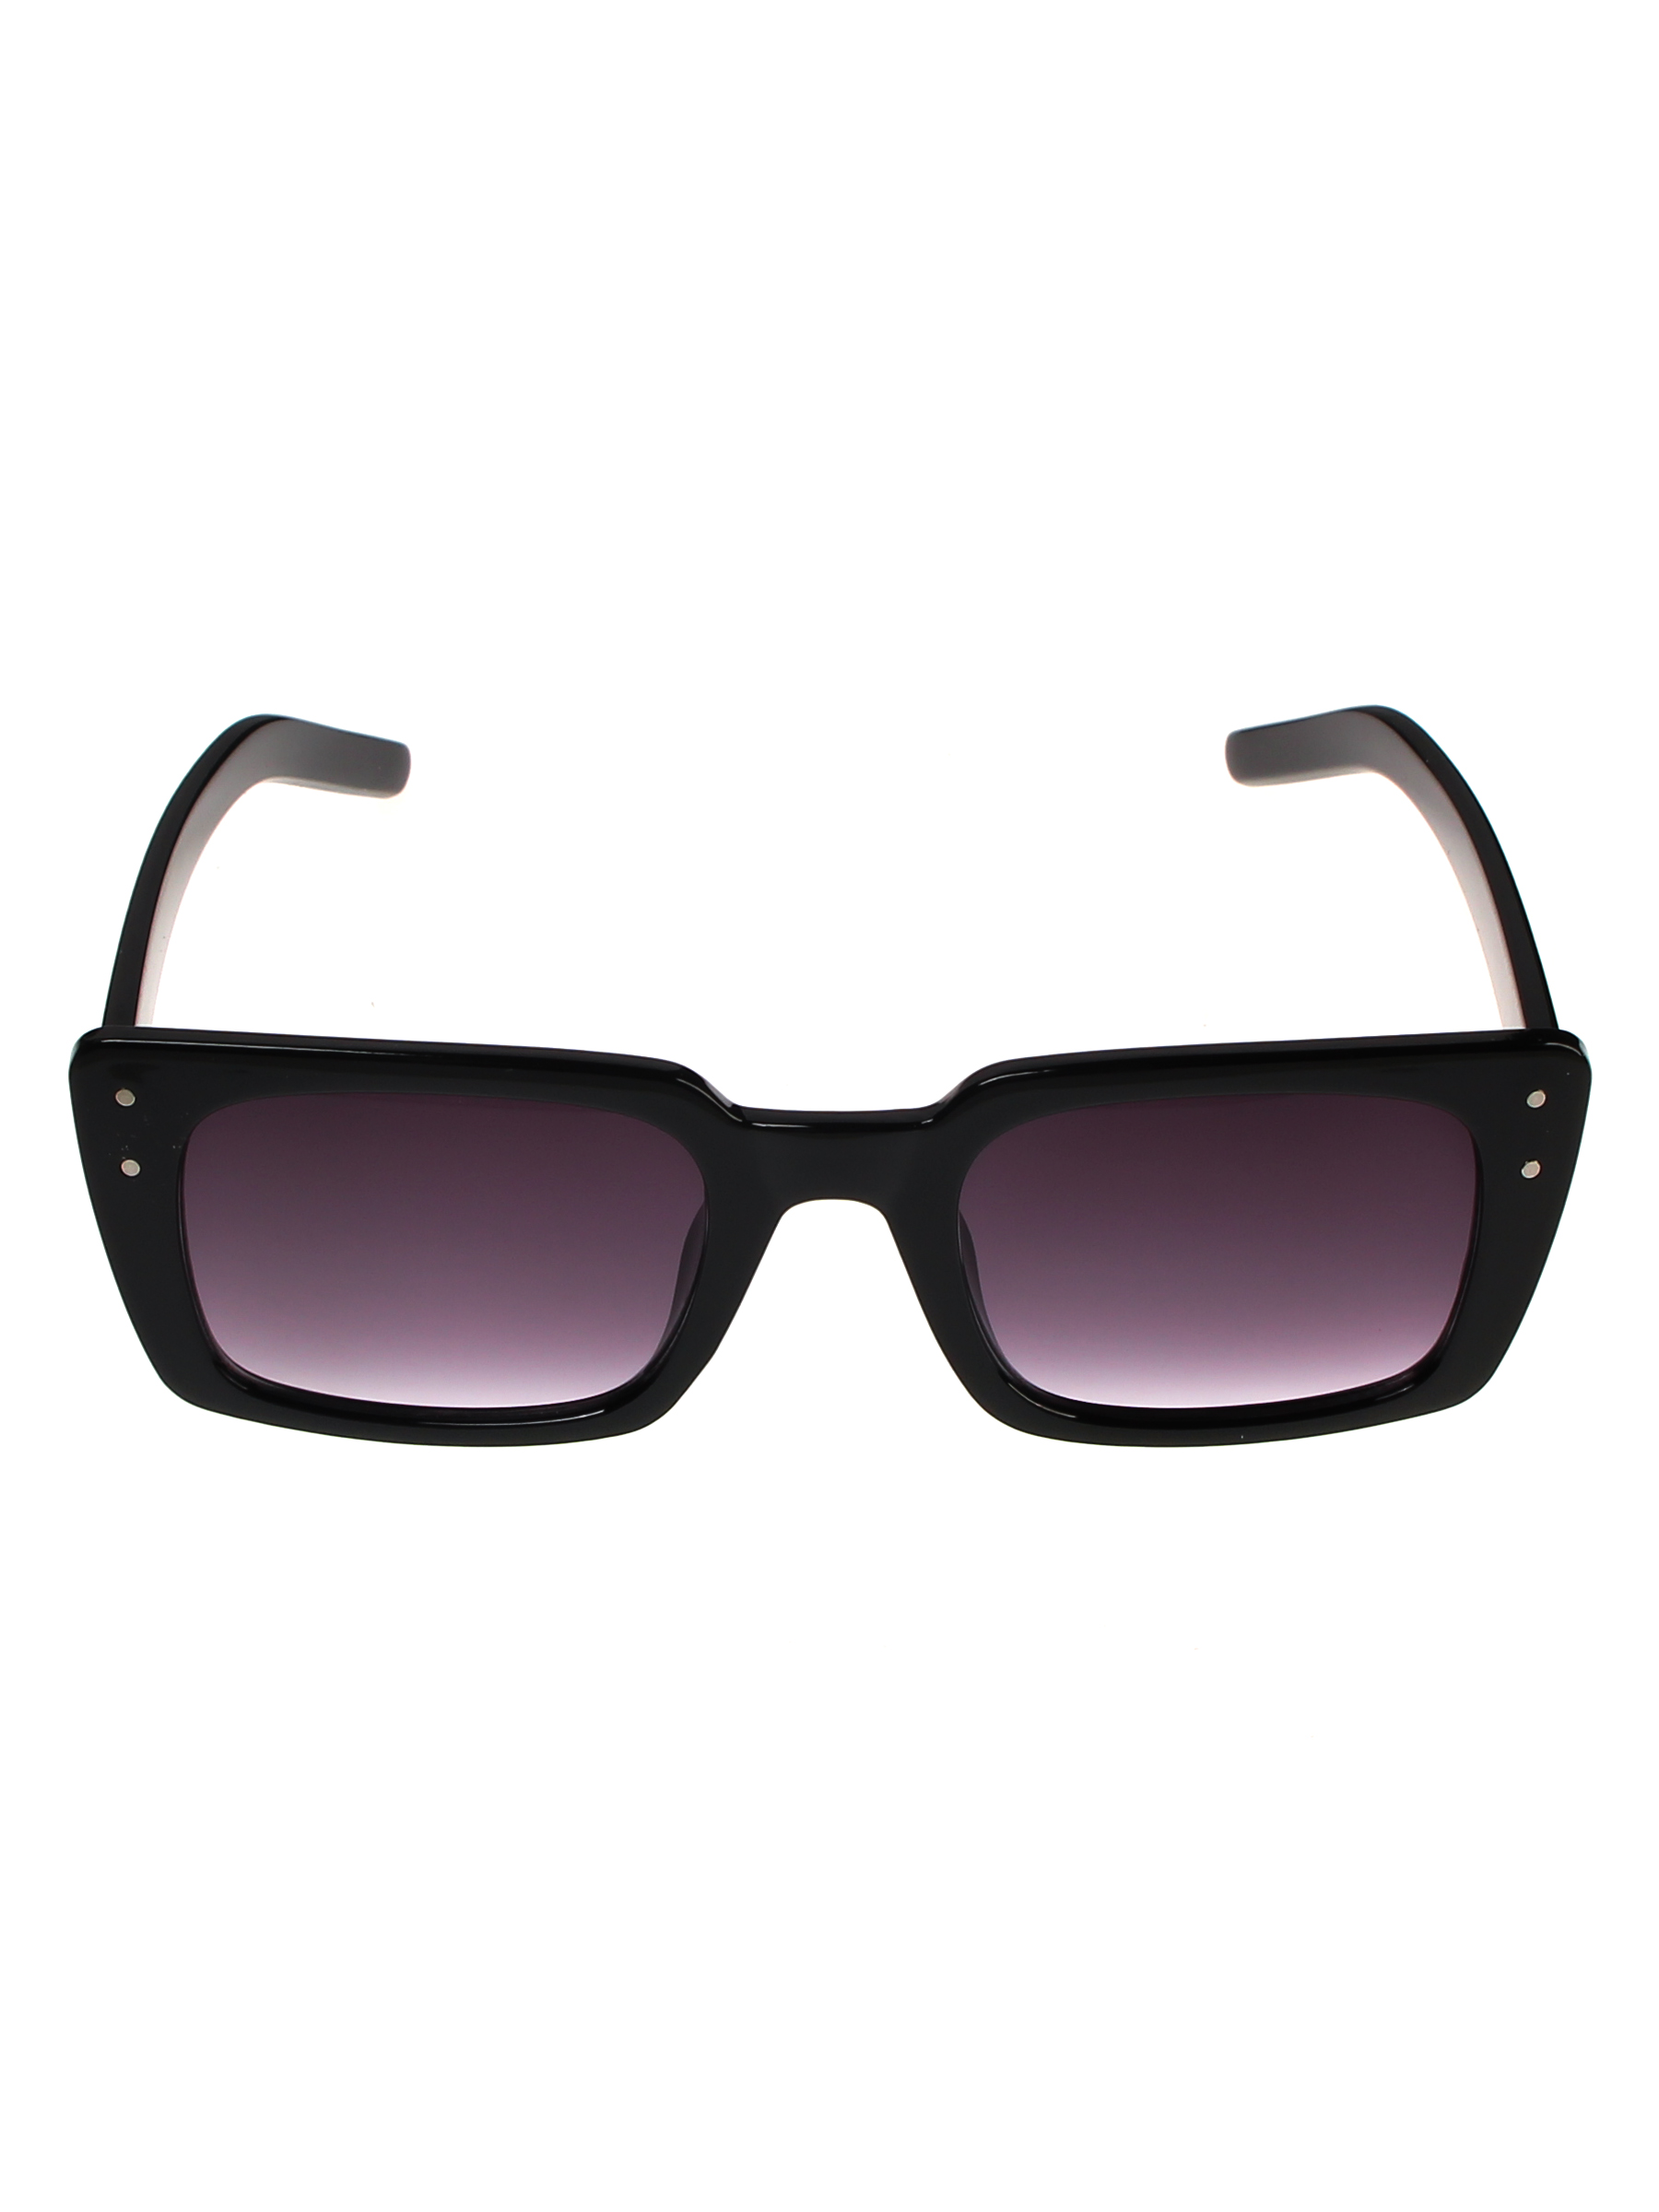 фото Солнцезащитные очки женские pretty mania mdp011 черный базовый